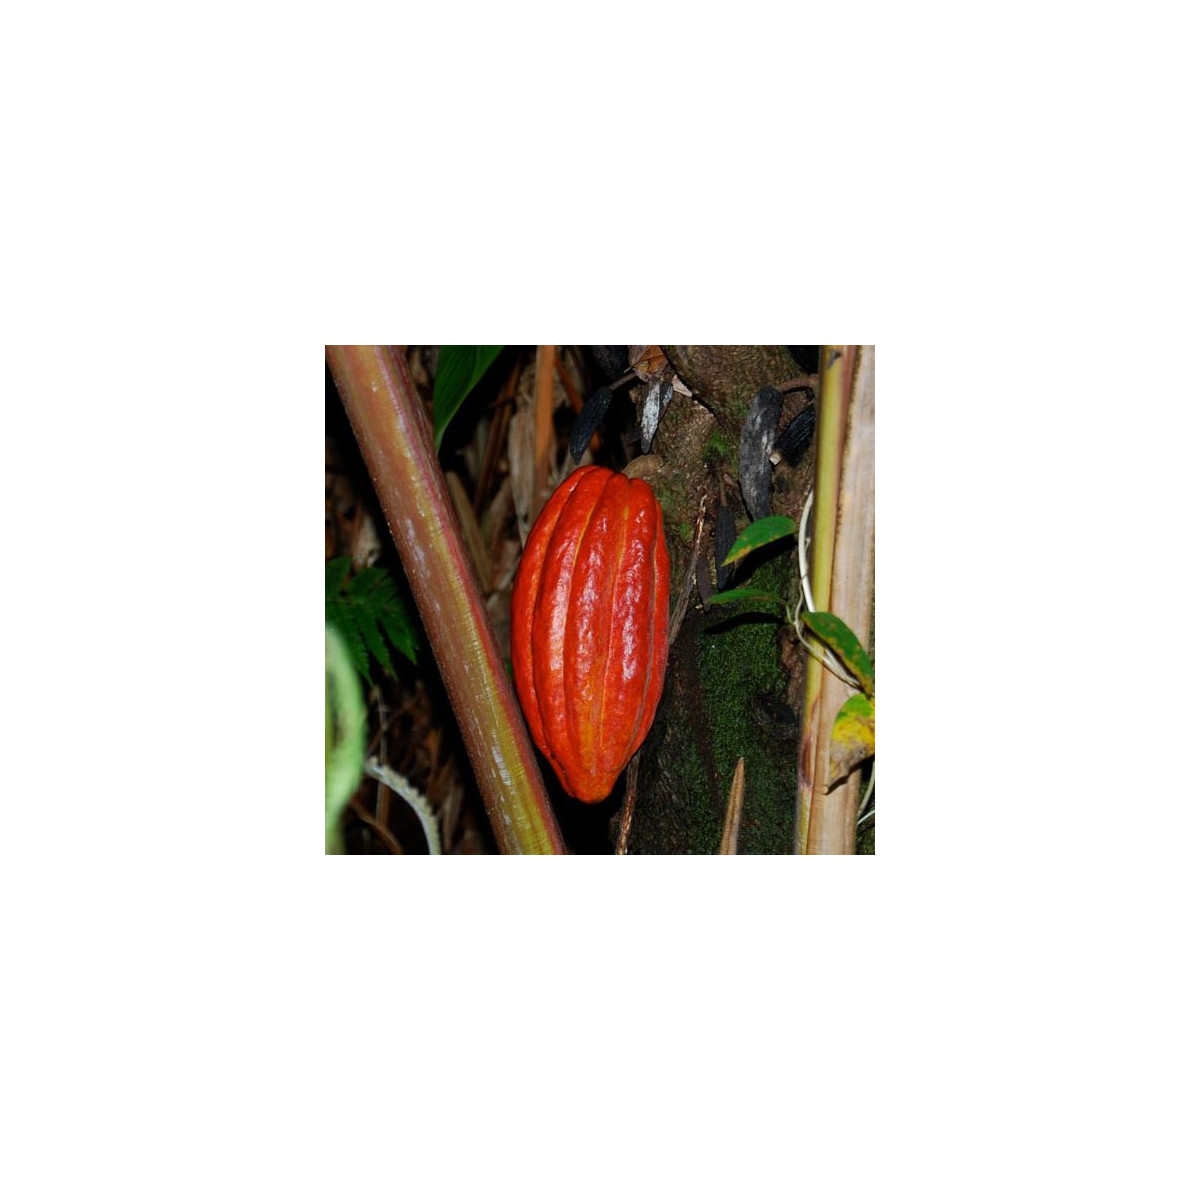 Kakaovník pravý - semena Kakaovníku - 5 ks - Theobroma cacao